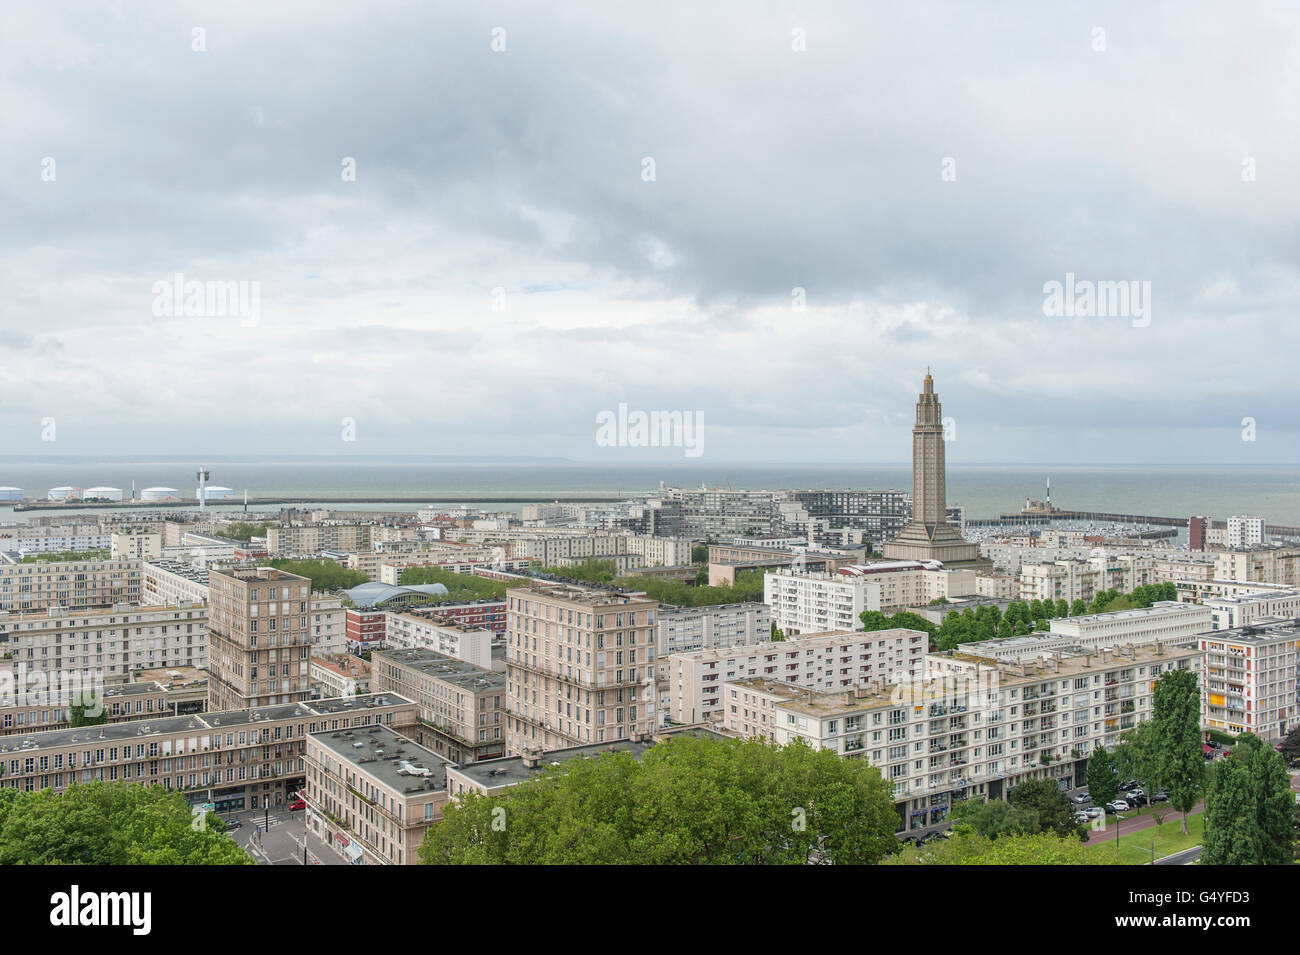 La zone du patrimoine mondial du Havre, construit par Auguste Perret avec St Joseph's église comme monument, Normandie, France Banque D'Images